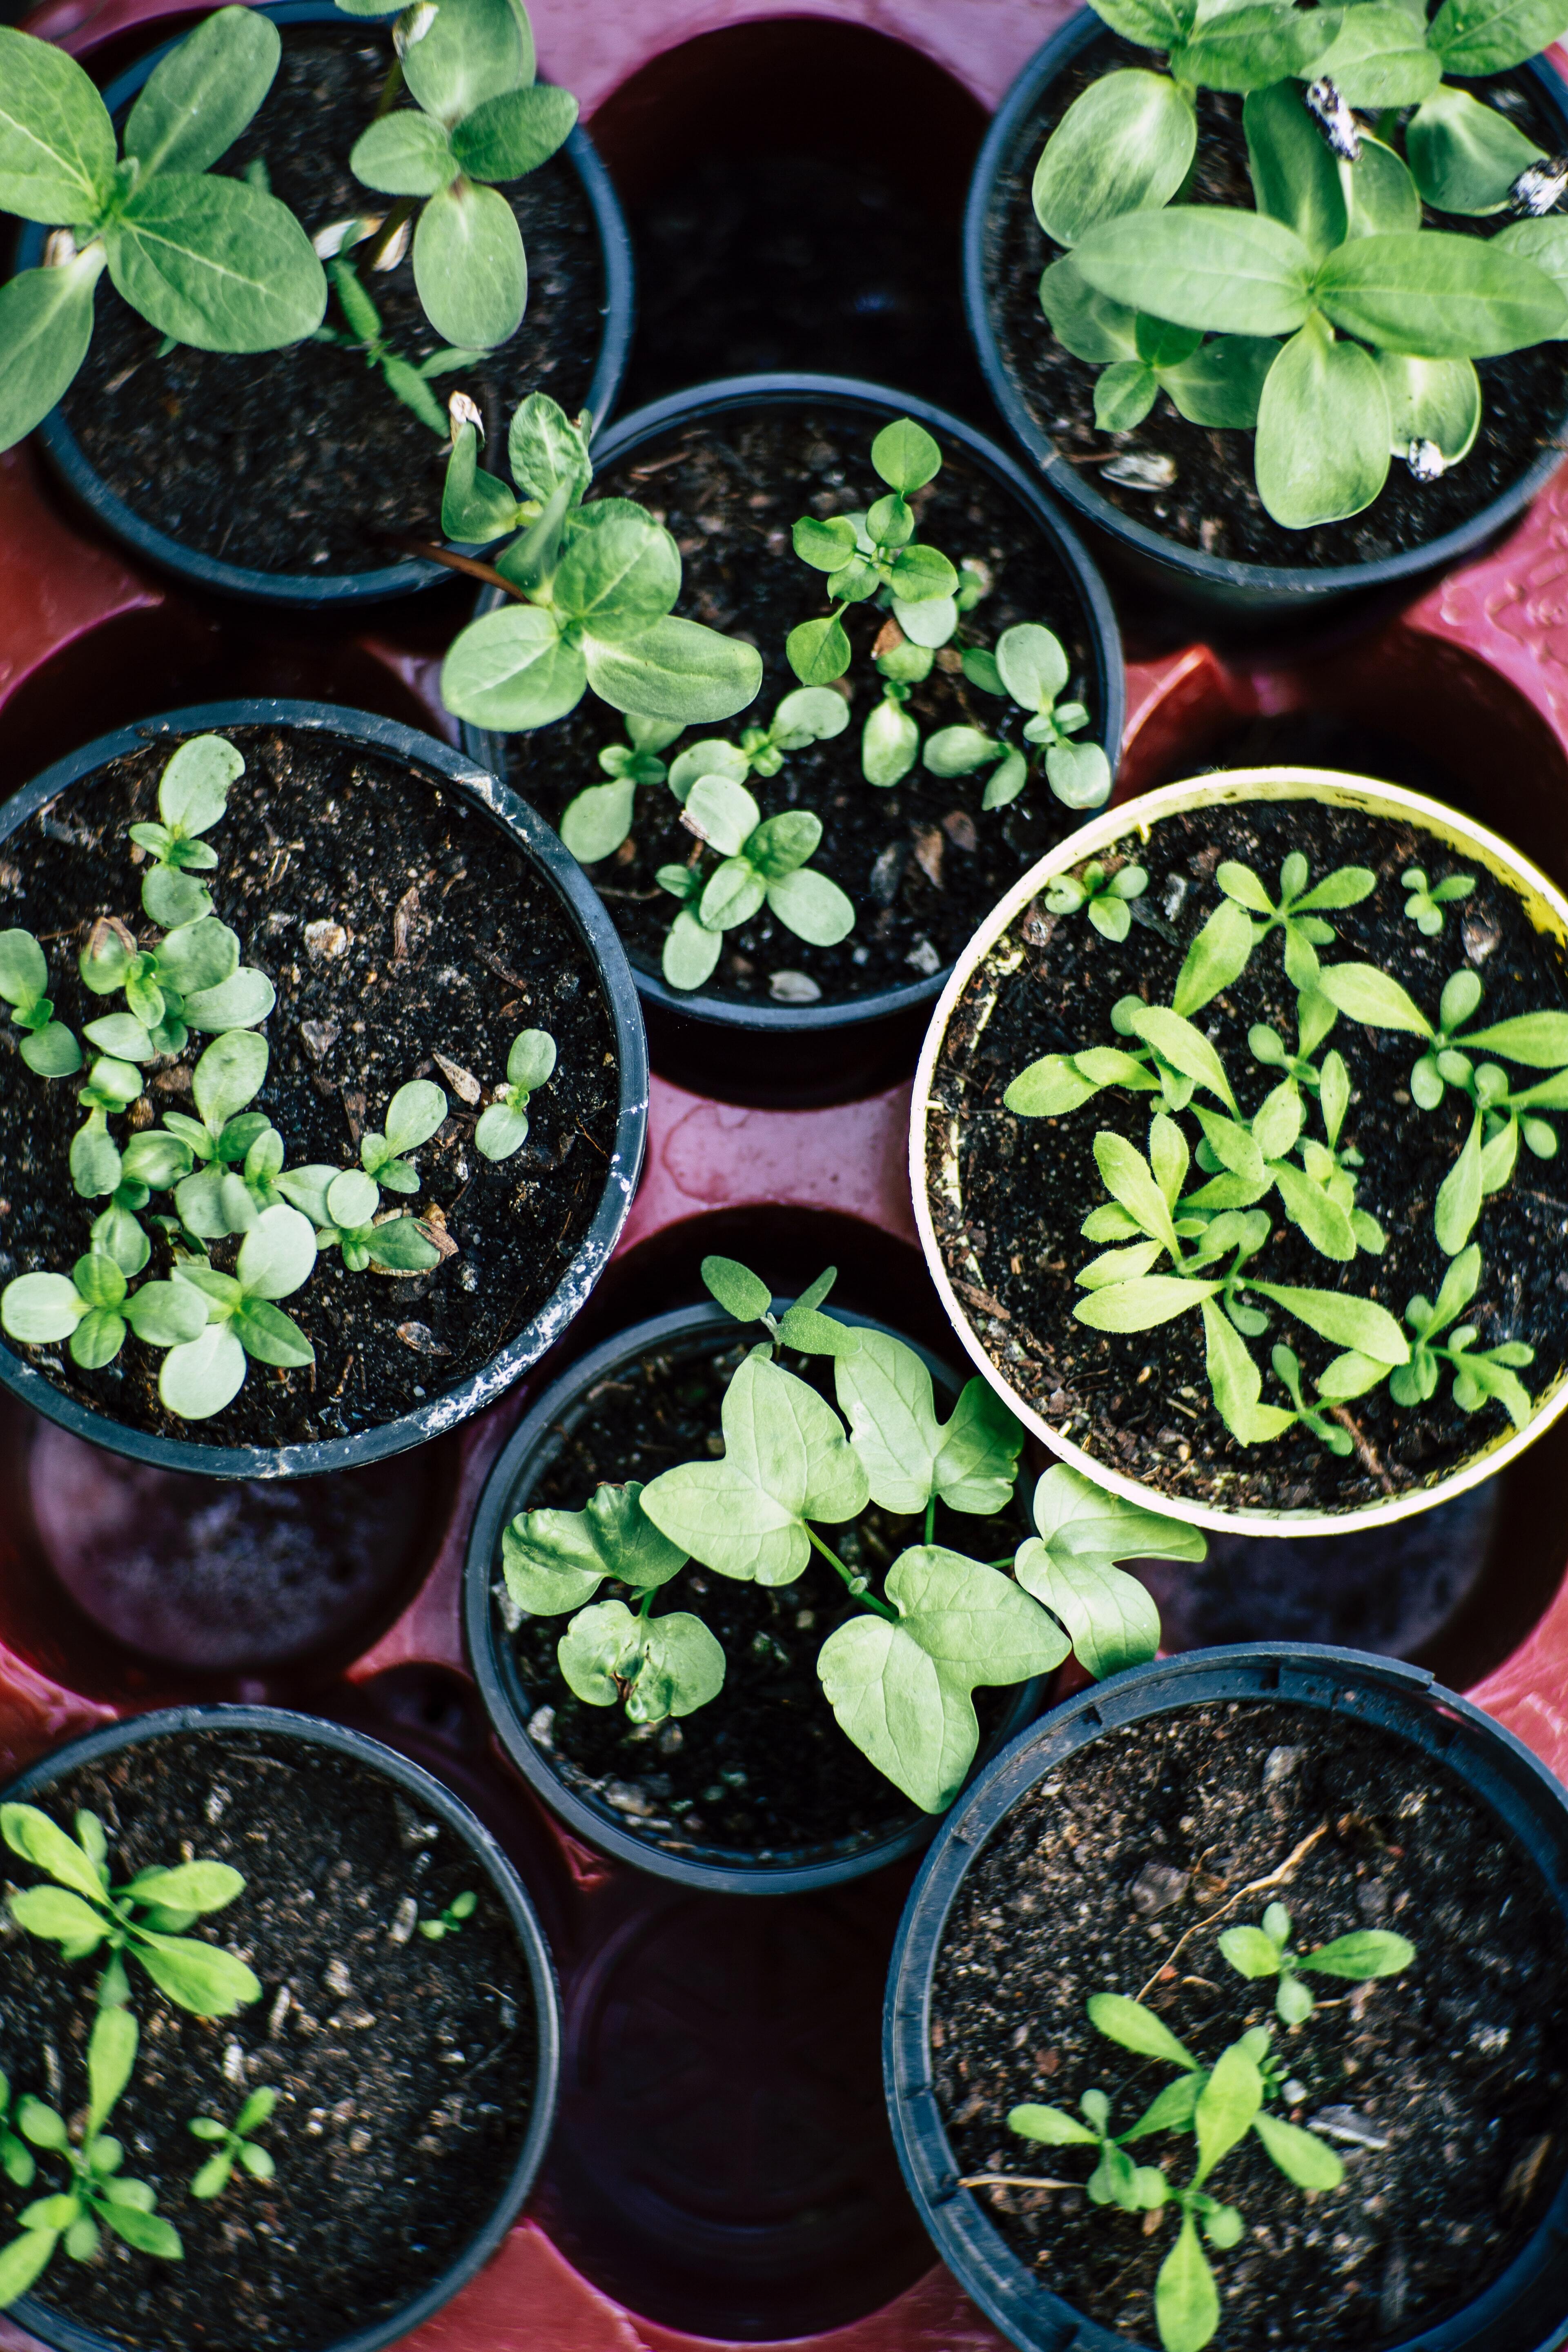 How to grow an indoor vegetable garden